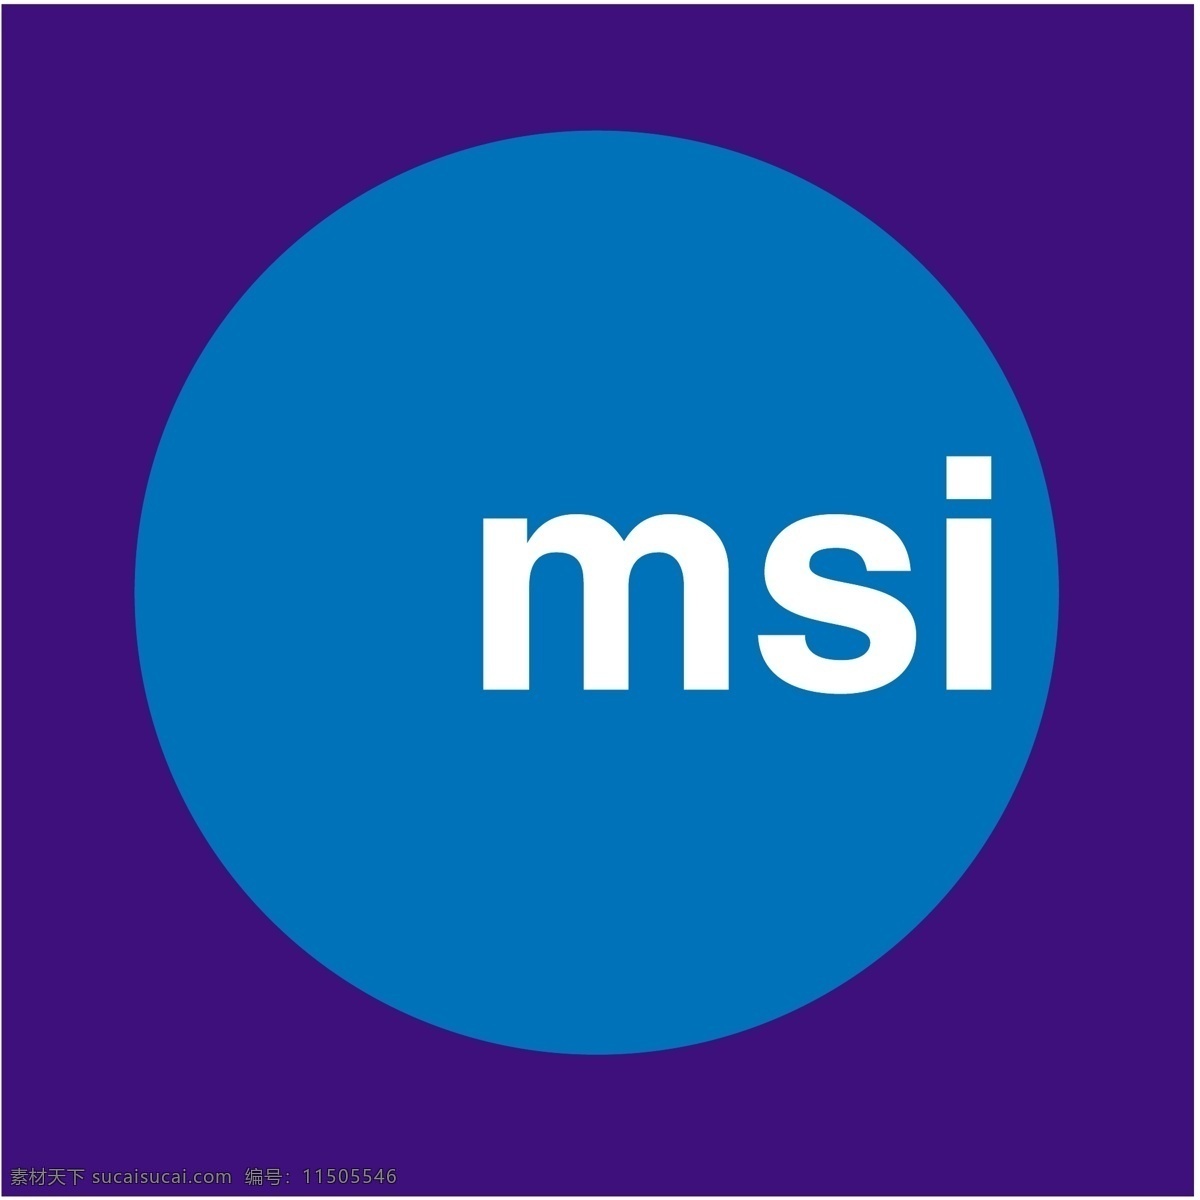 微星免费下载 msi msi标志 标识为免费 psd源文件 logo设计